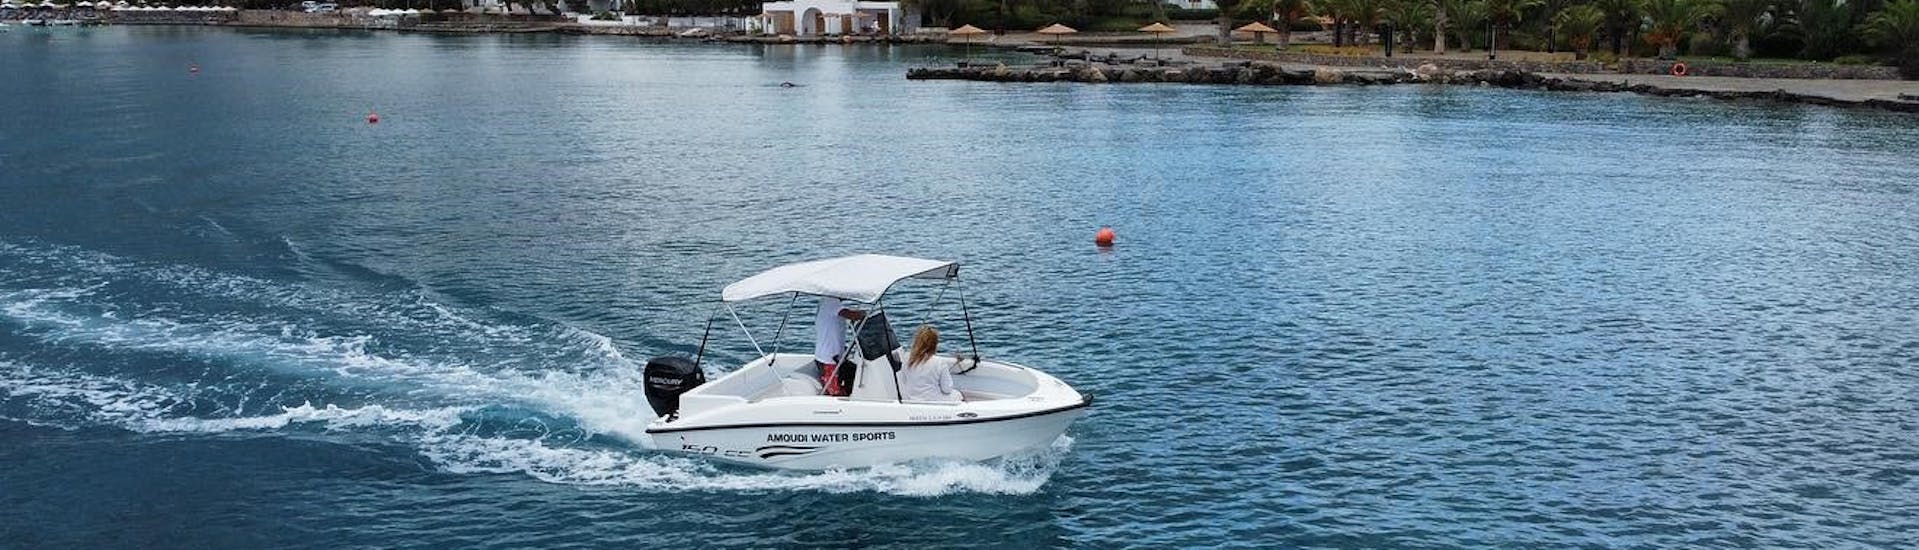 Bootsverleih in Agios Nikolaos (bis zu 6 Personen) ohne Führerschein.